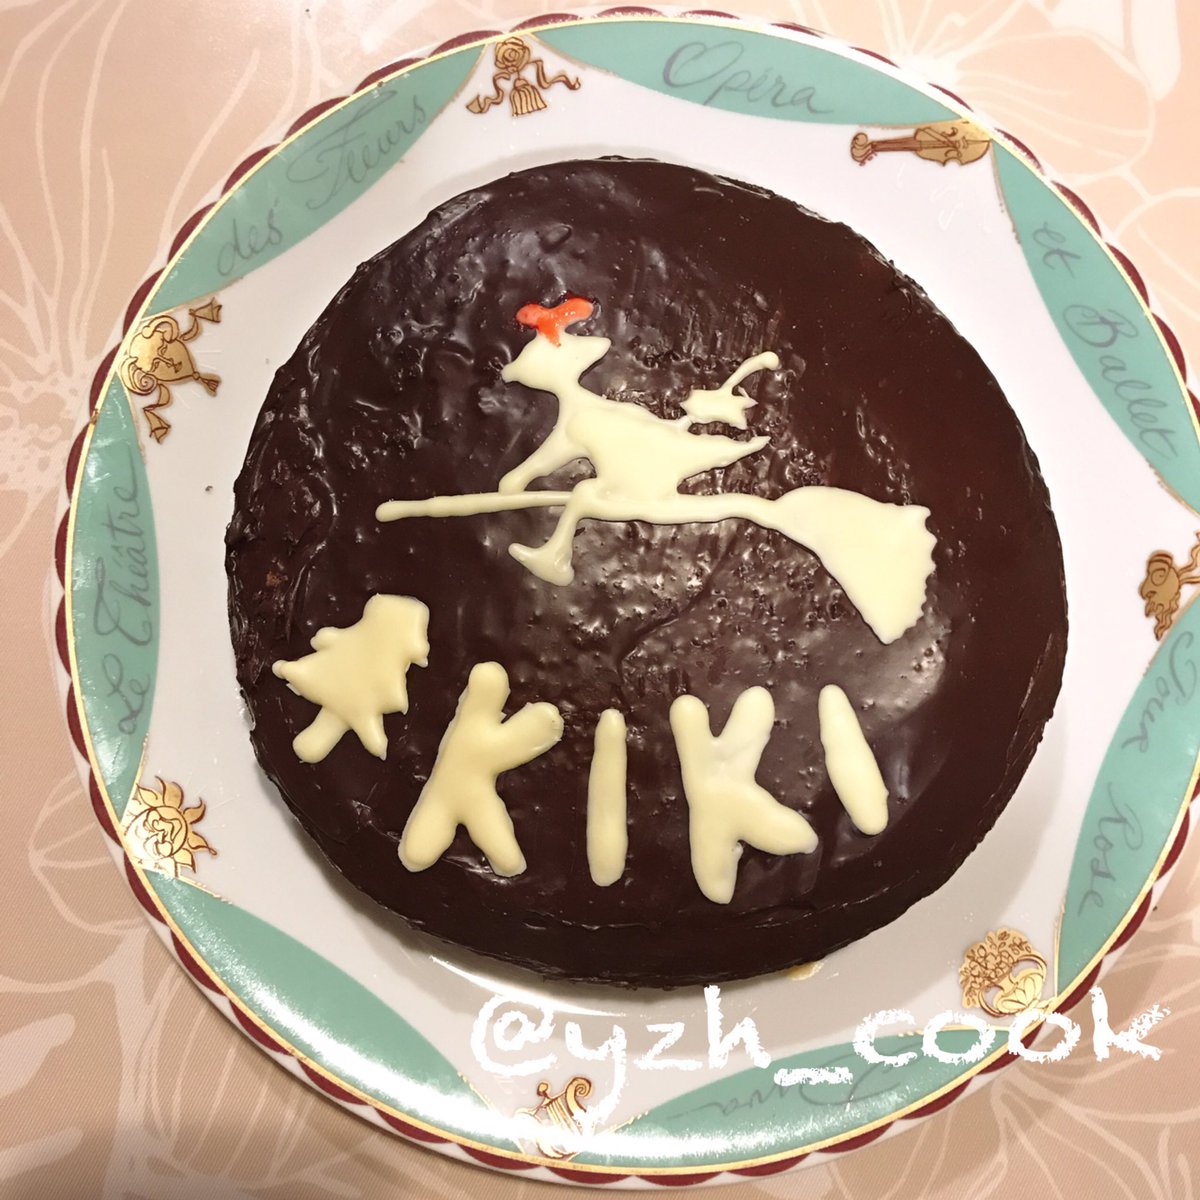 Yuzu على تويتر 魔女の宅急便の Kikiケーキ ヘラなくてスプーンで塗りました ケーキの中はガナッシュと ベリーの層にしました お菓子作り ケーキ チョコレートケーキ ジブリ飯 魔女の宅急便 お菓子作り好きな人と繋がりたい 手作りケーキ